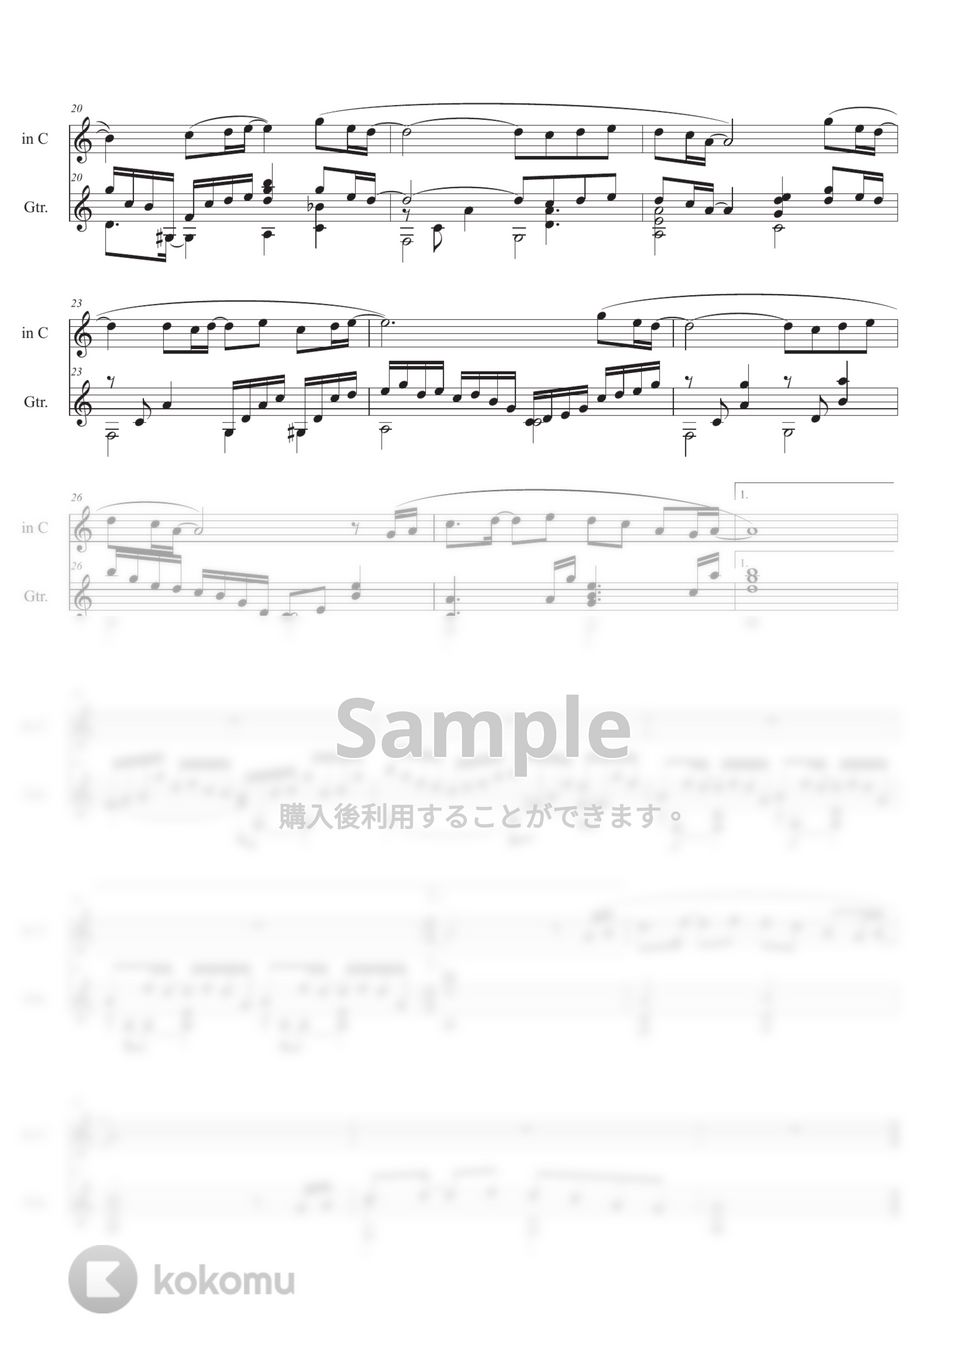 松任谷 由実 - 春よ、来い (ギター+メロディ(in C,in B♭,in E♭)) by Ponze Records